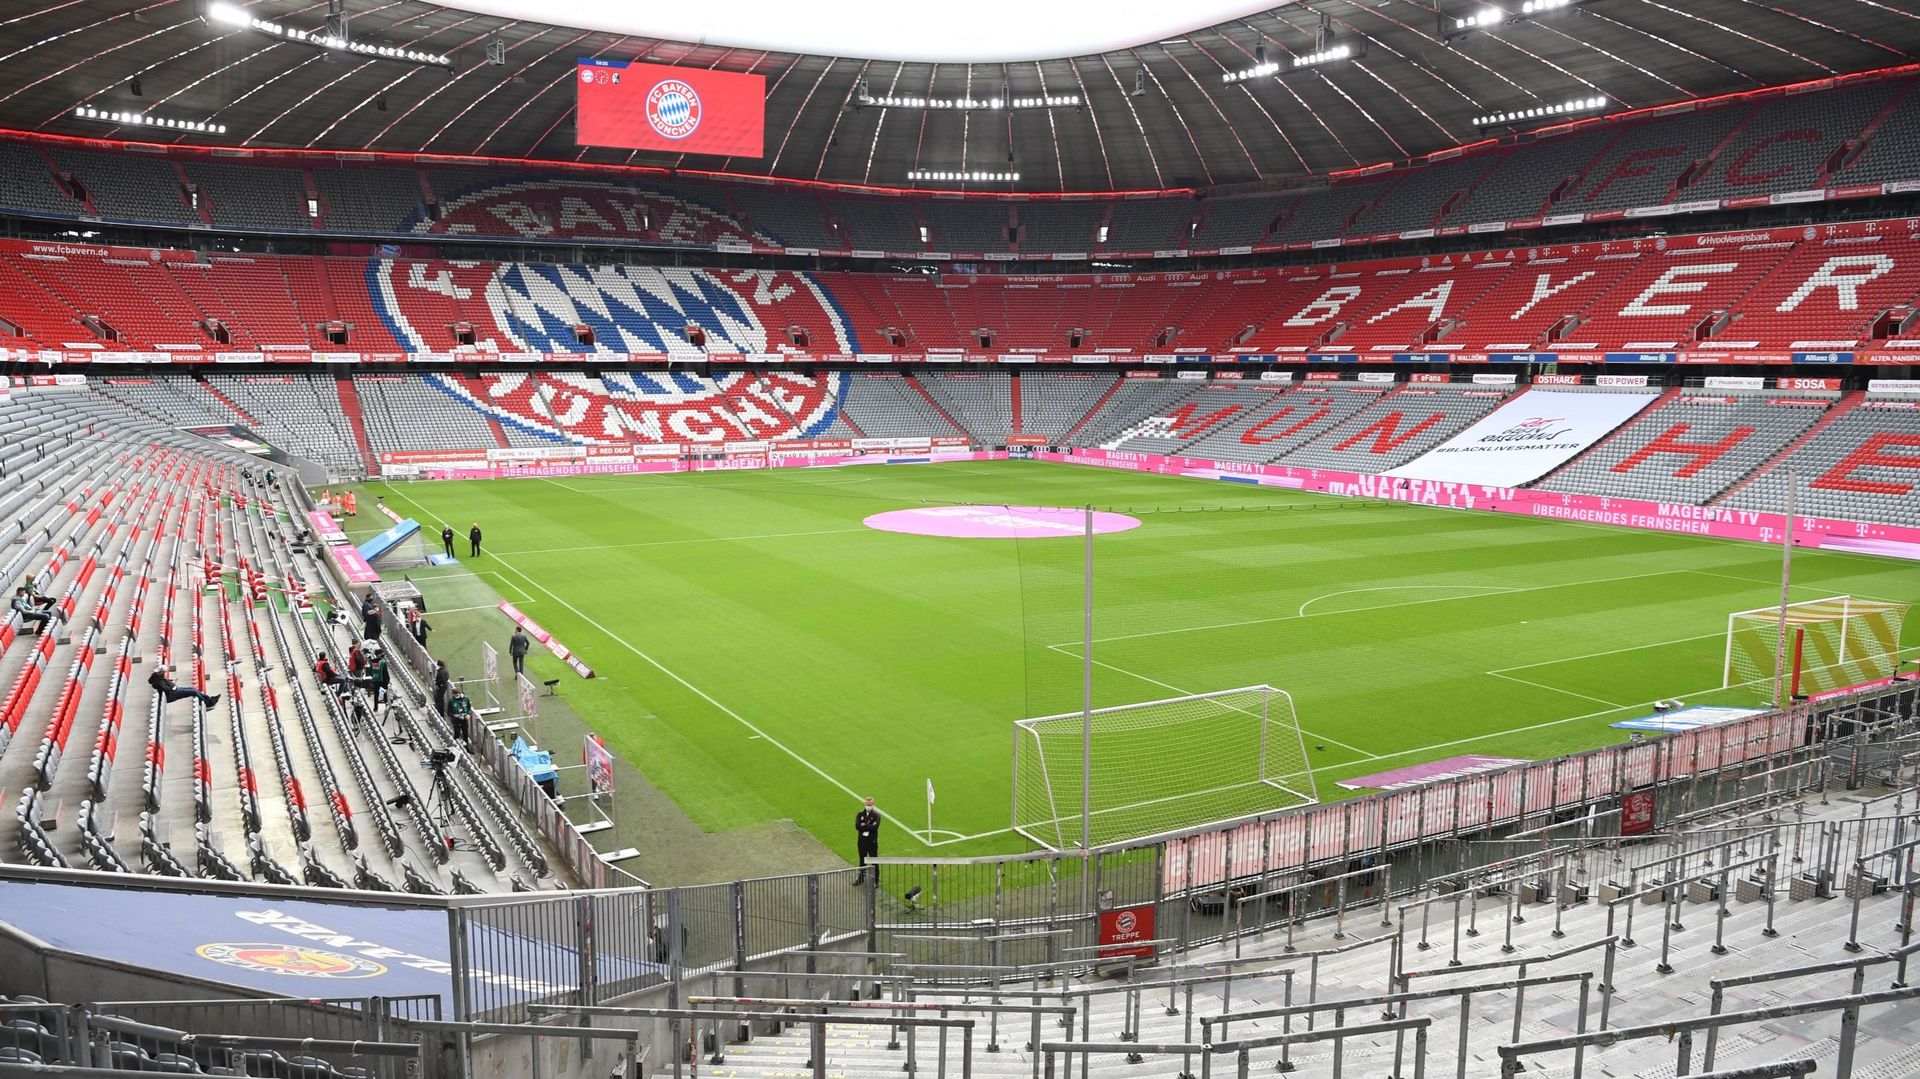 Le stade du Bayern Munich vide de tous spectateurs. Le club bavarois va devoir rejouer à huis clos prochainement, en raison de nouvelles mesures anti-Covid, a annoncé mardi le chef de l’exécutif régional de Bavière, Markus Söder.